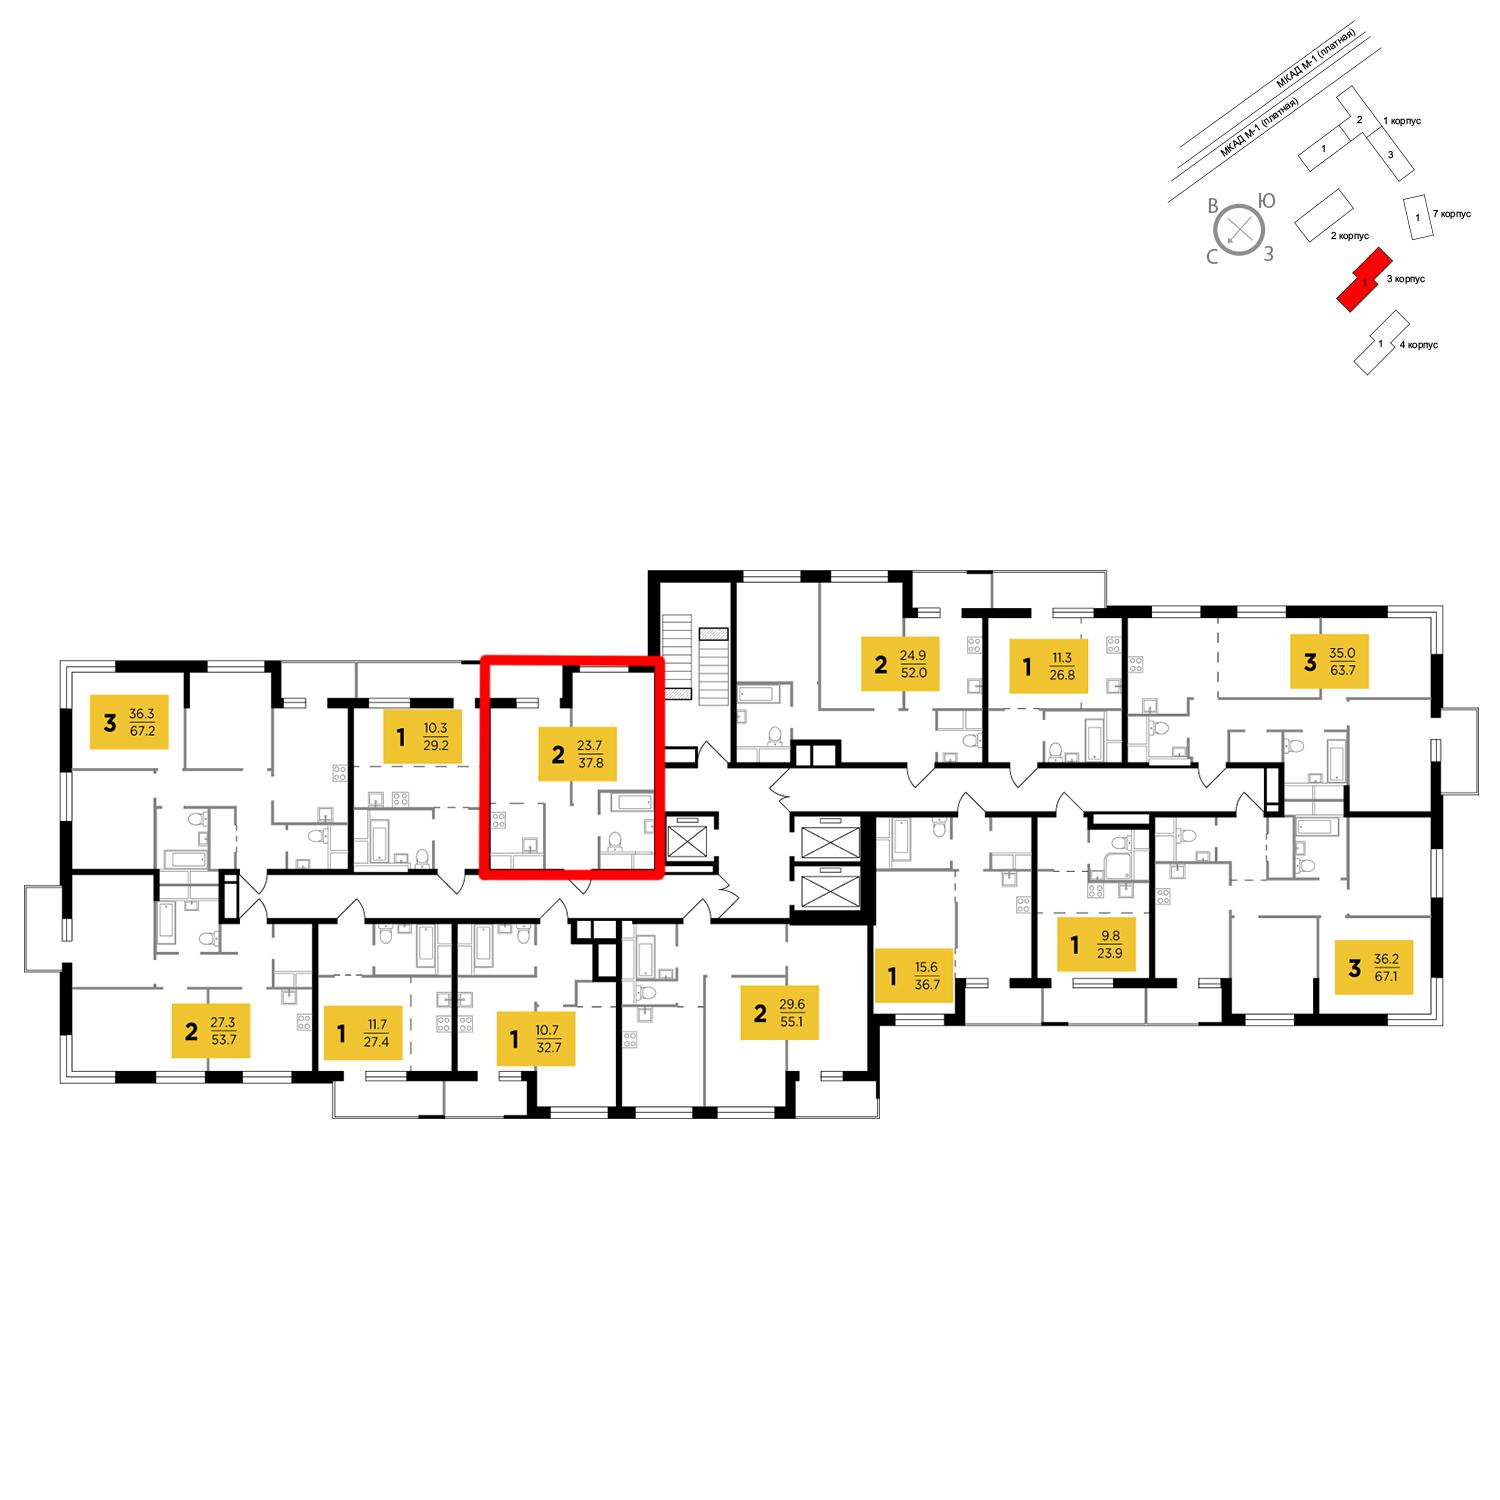 Продаётся 2-комнатная квартира в новостройке 37.8 кв.м. этаж 17/24 за 3 970 871 руб 